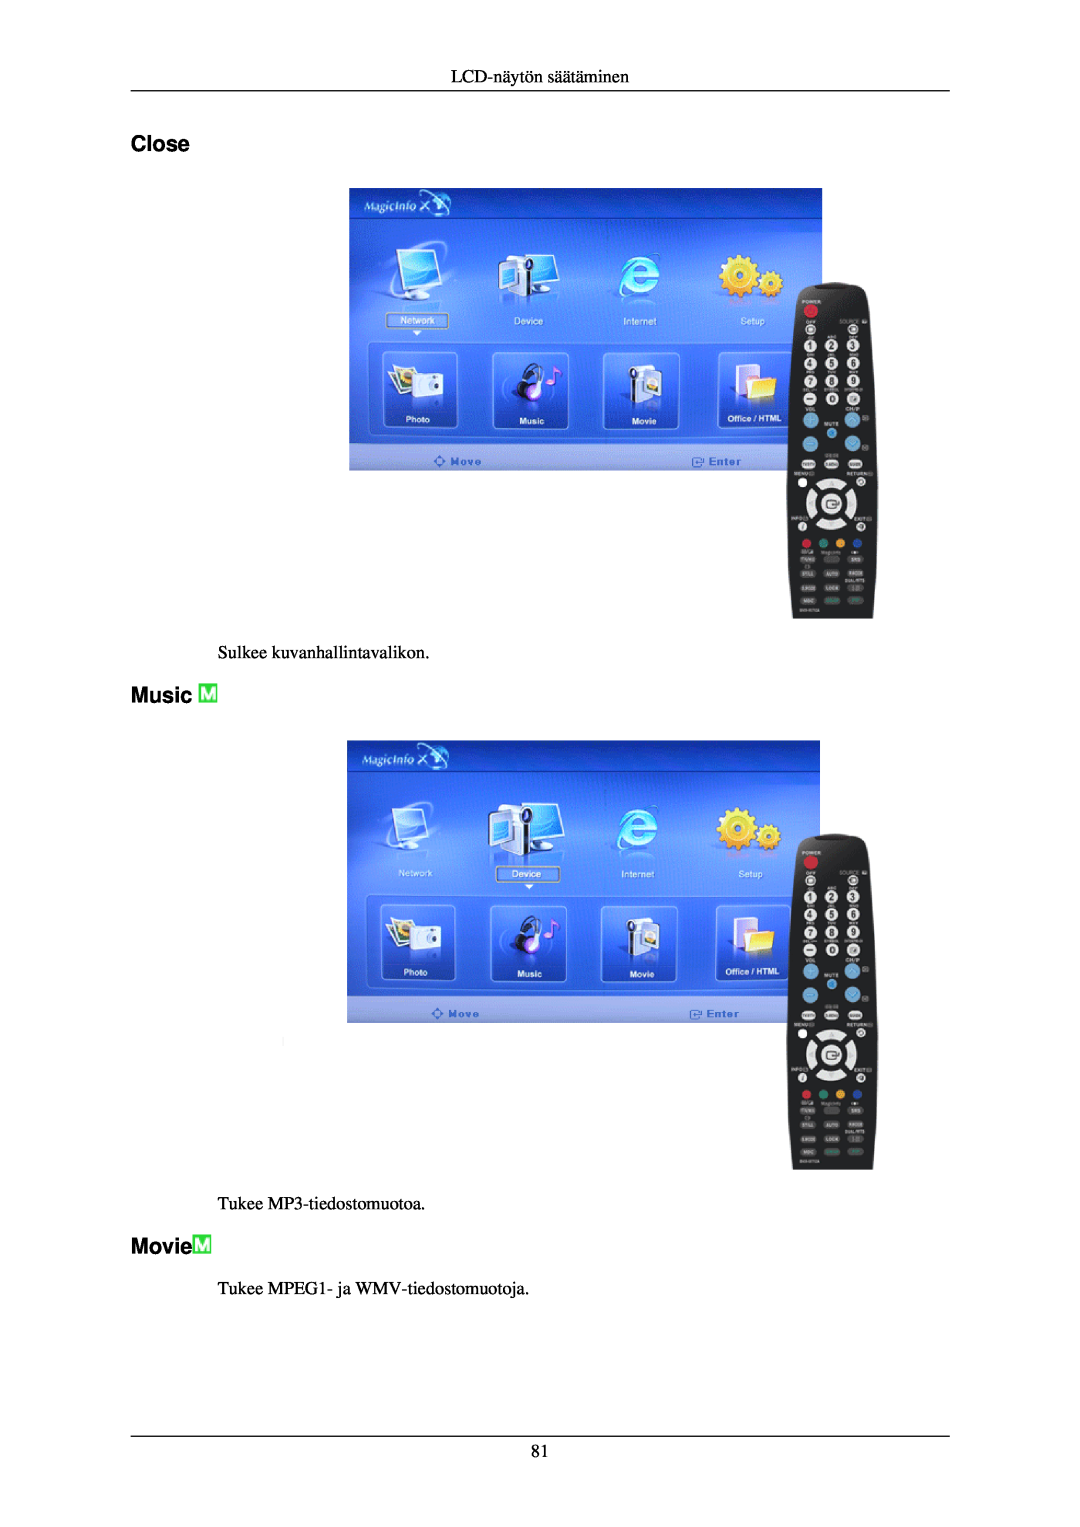 Samsung LH40TCUMBG/EN Close, Music, Movie, LCD-näytön säätäminen, Sulkee kuvanhallintavalikon, Tukee MP3-tiedostomuotoa 